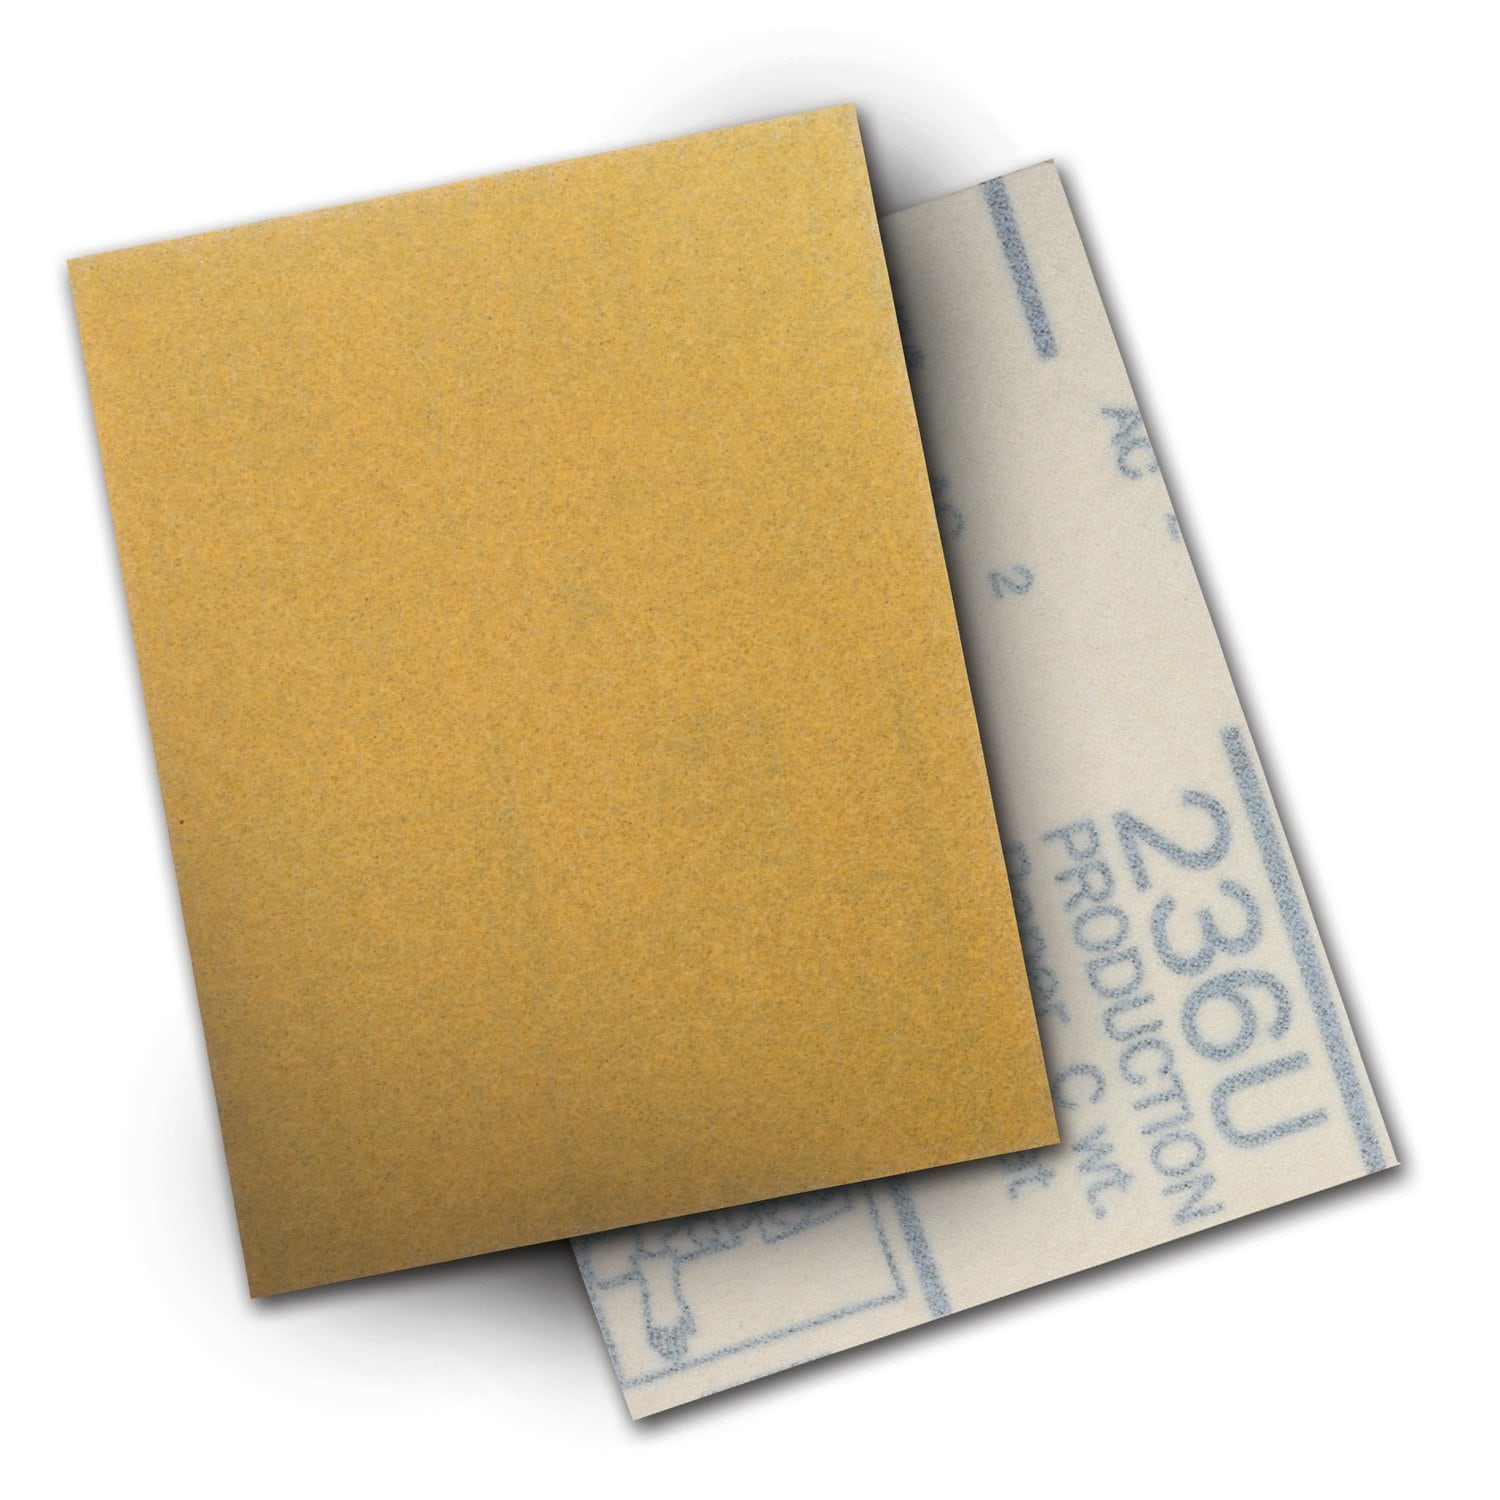 7000119279 - 3M Hookit Paper Sheet 236U, P150 C-weight, 3 in x 4 in, 50/Carton, 500
ea/Case